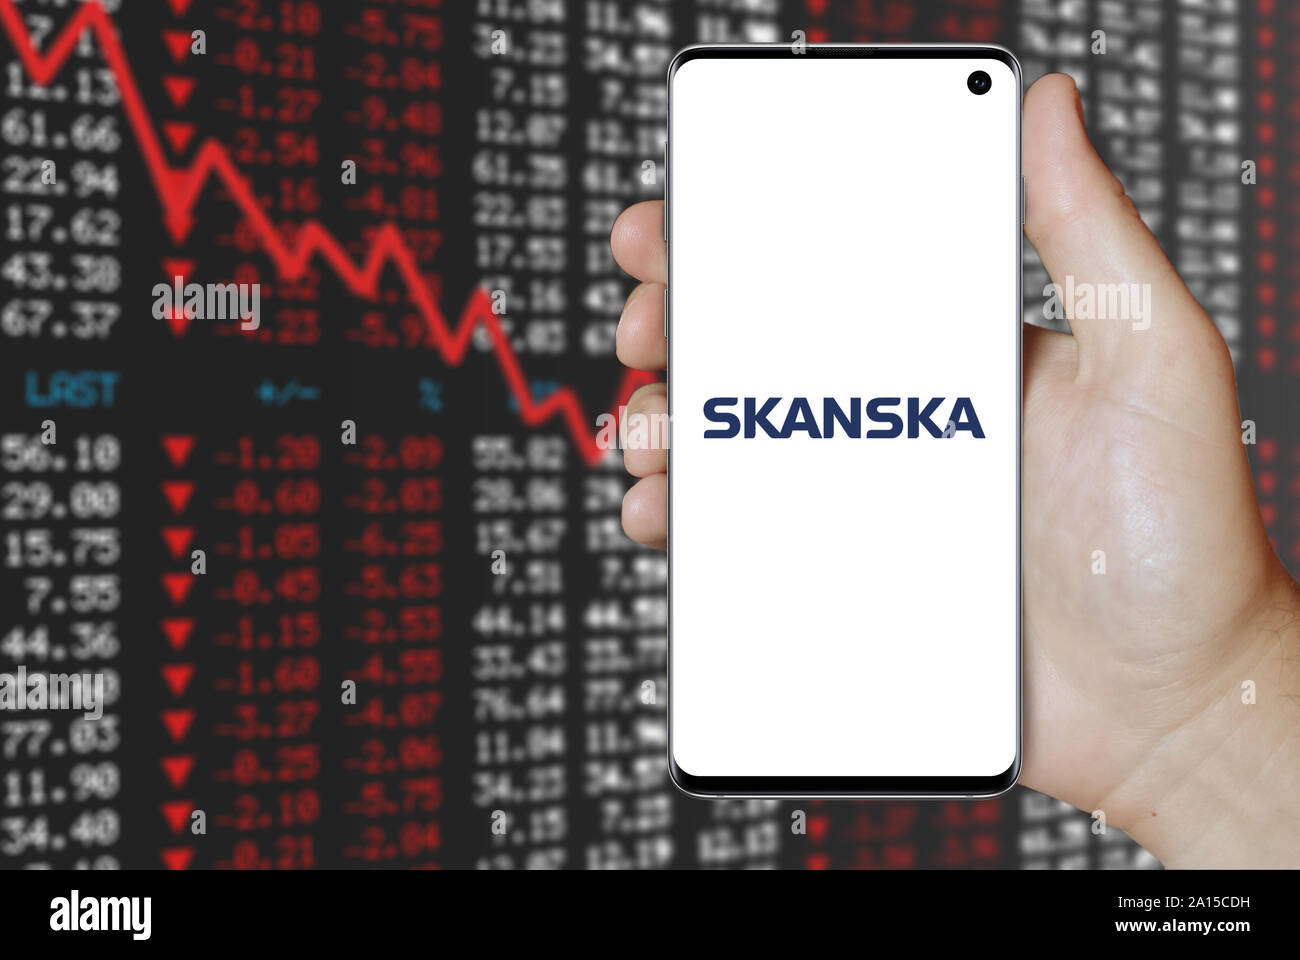 Un homme est titulaire d'un smartphone affichant le logo de la société Skanska énumérés sur OMX Stockholm. Contexte du marché boursier négatif. Credit : PIXDUCE Banque D'Images